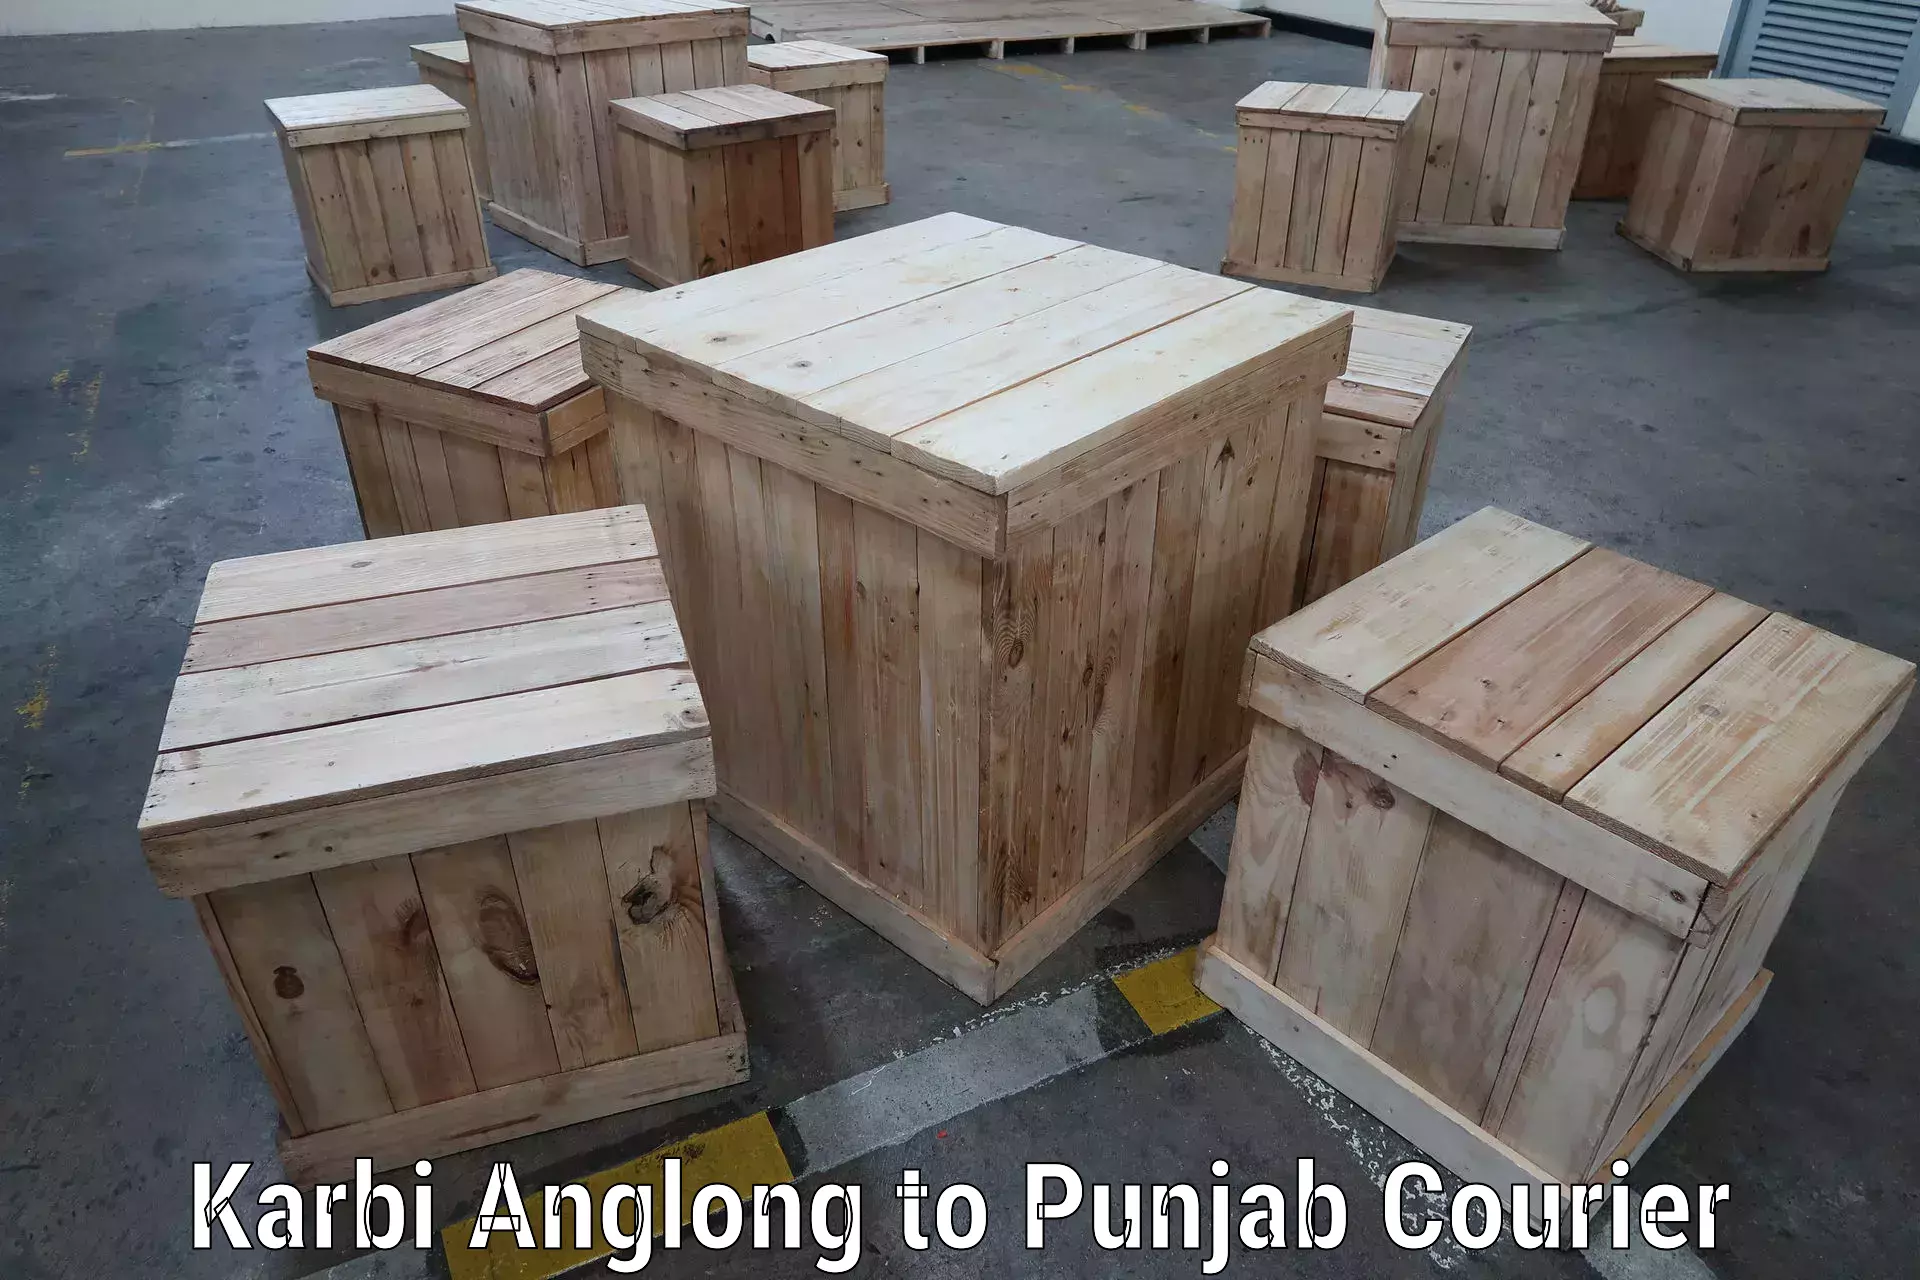 Reliable freight solutions Karbi Anglong to Ajnala